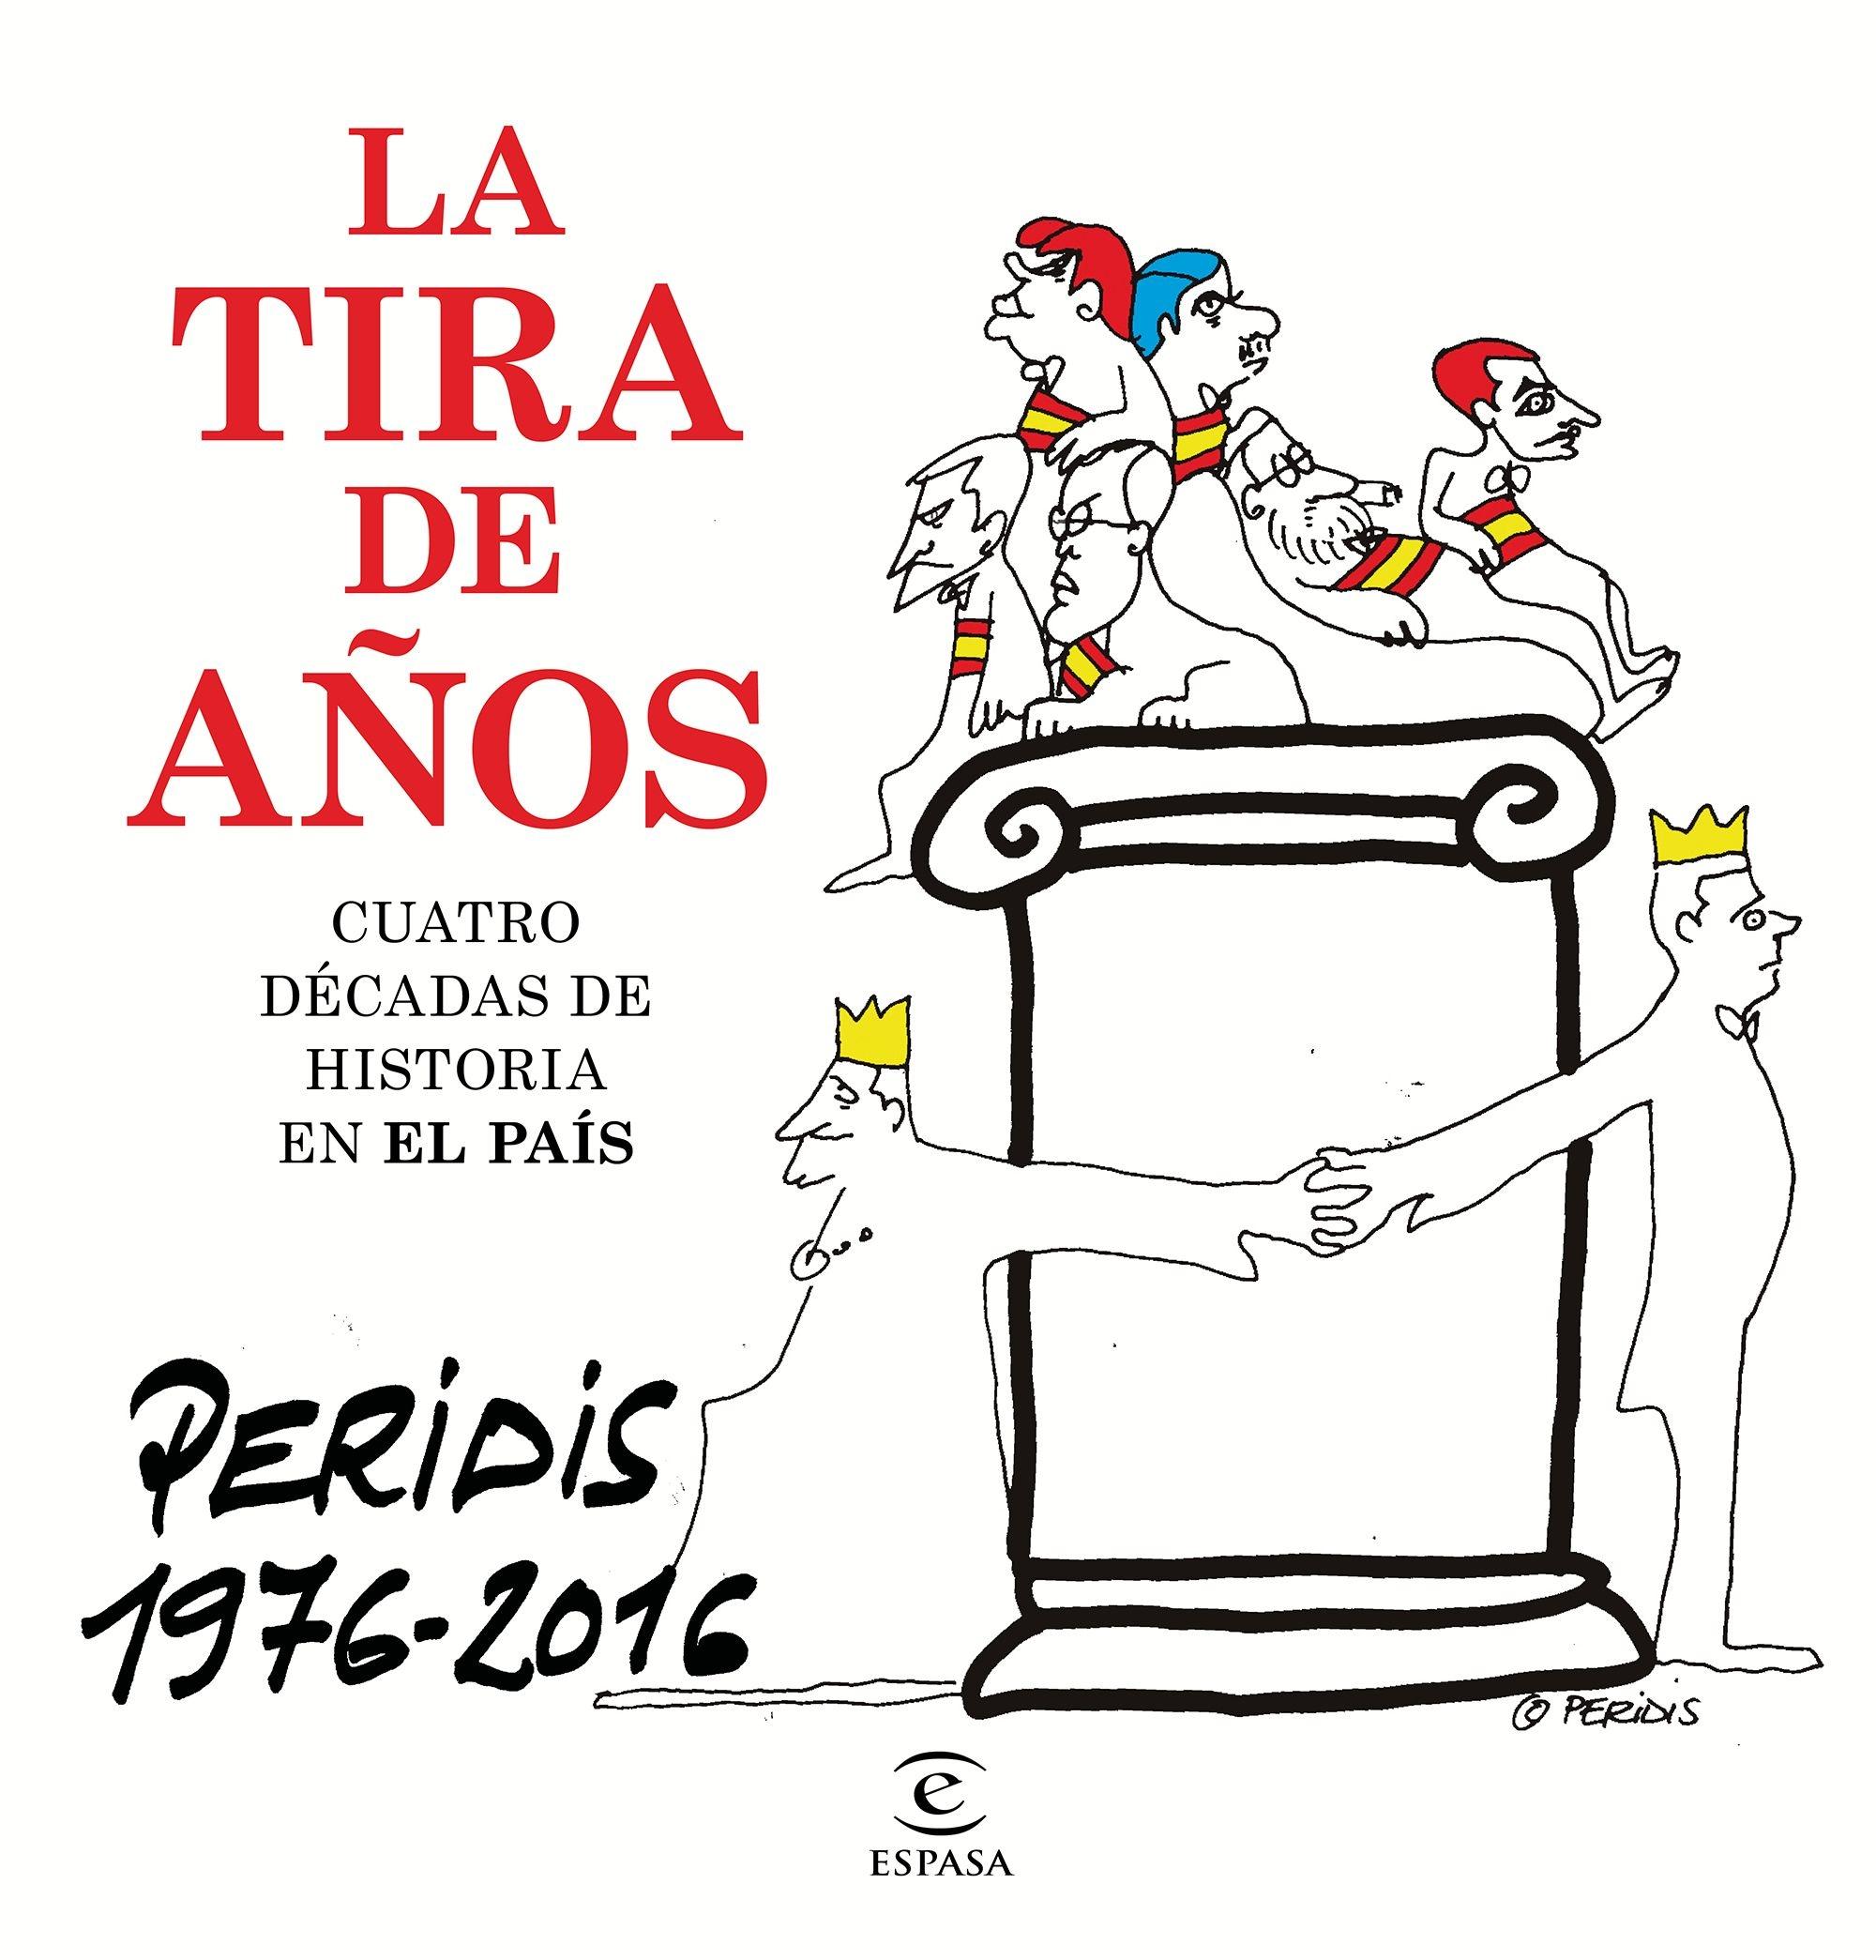 TIRA DE AÑOS. PERIDIS 1976-2016, LA "CUATRO DÉCADAS DE HISTORIA EN EL PAÍS". 